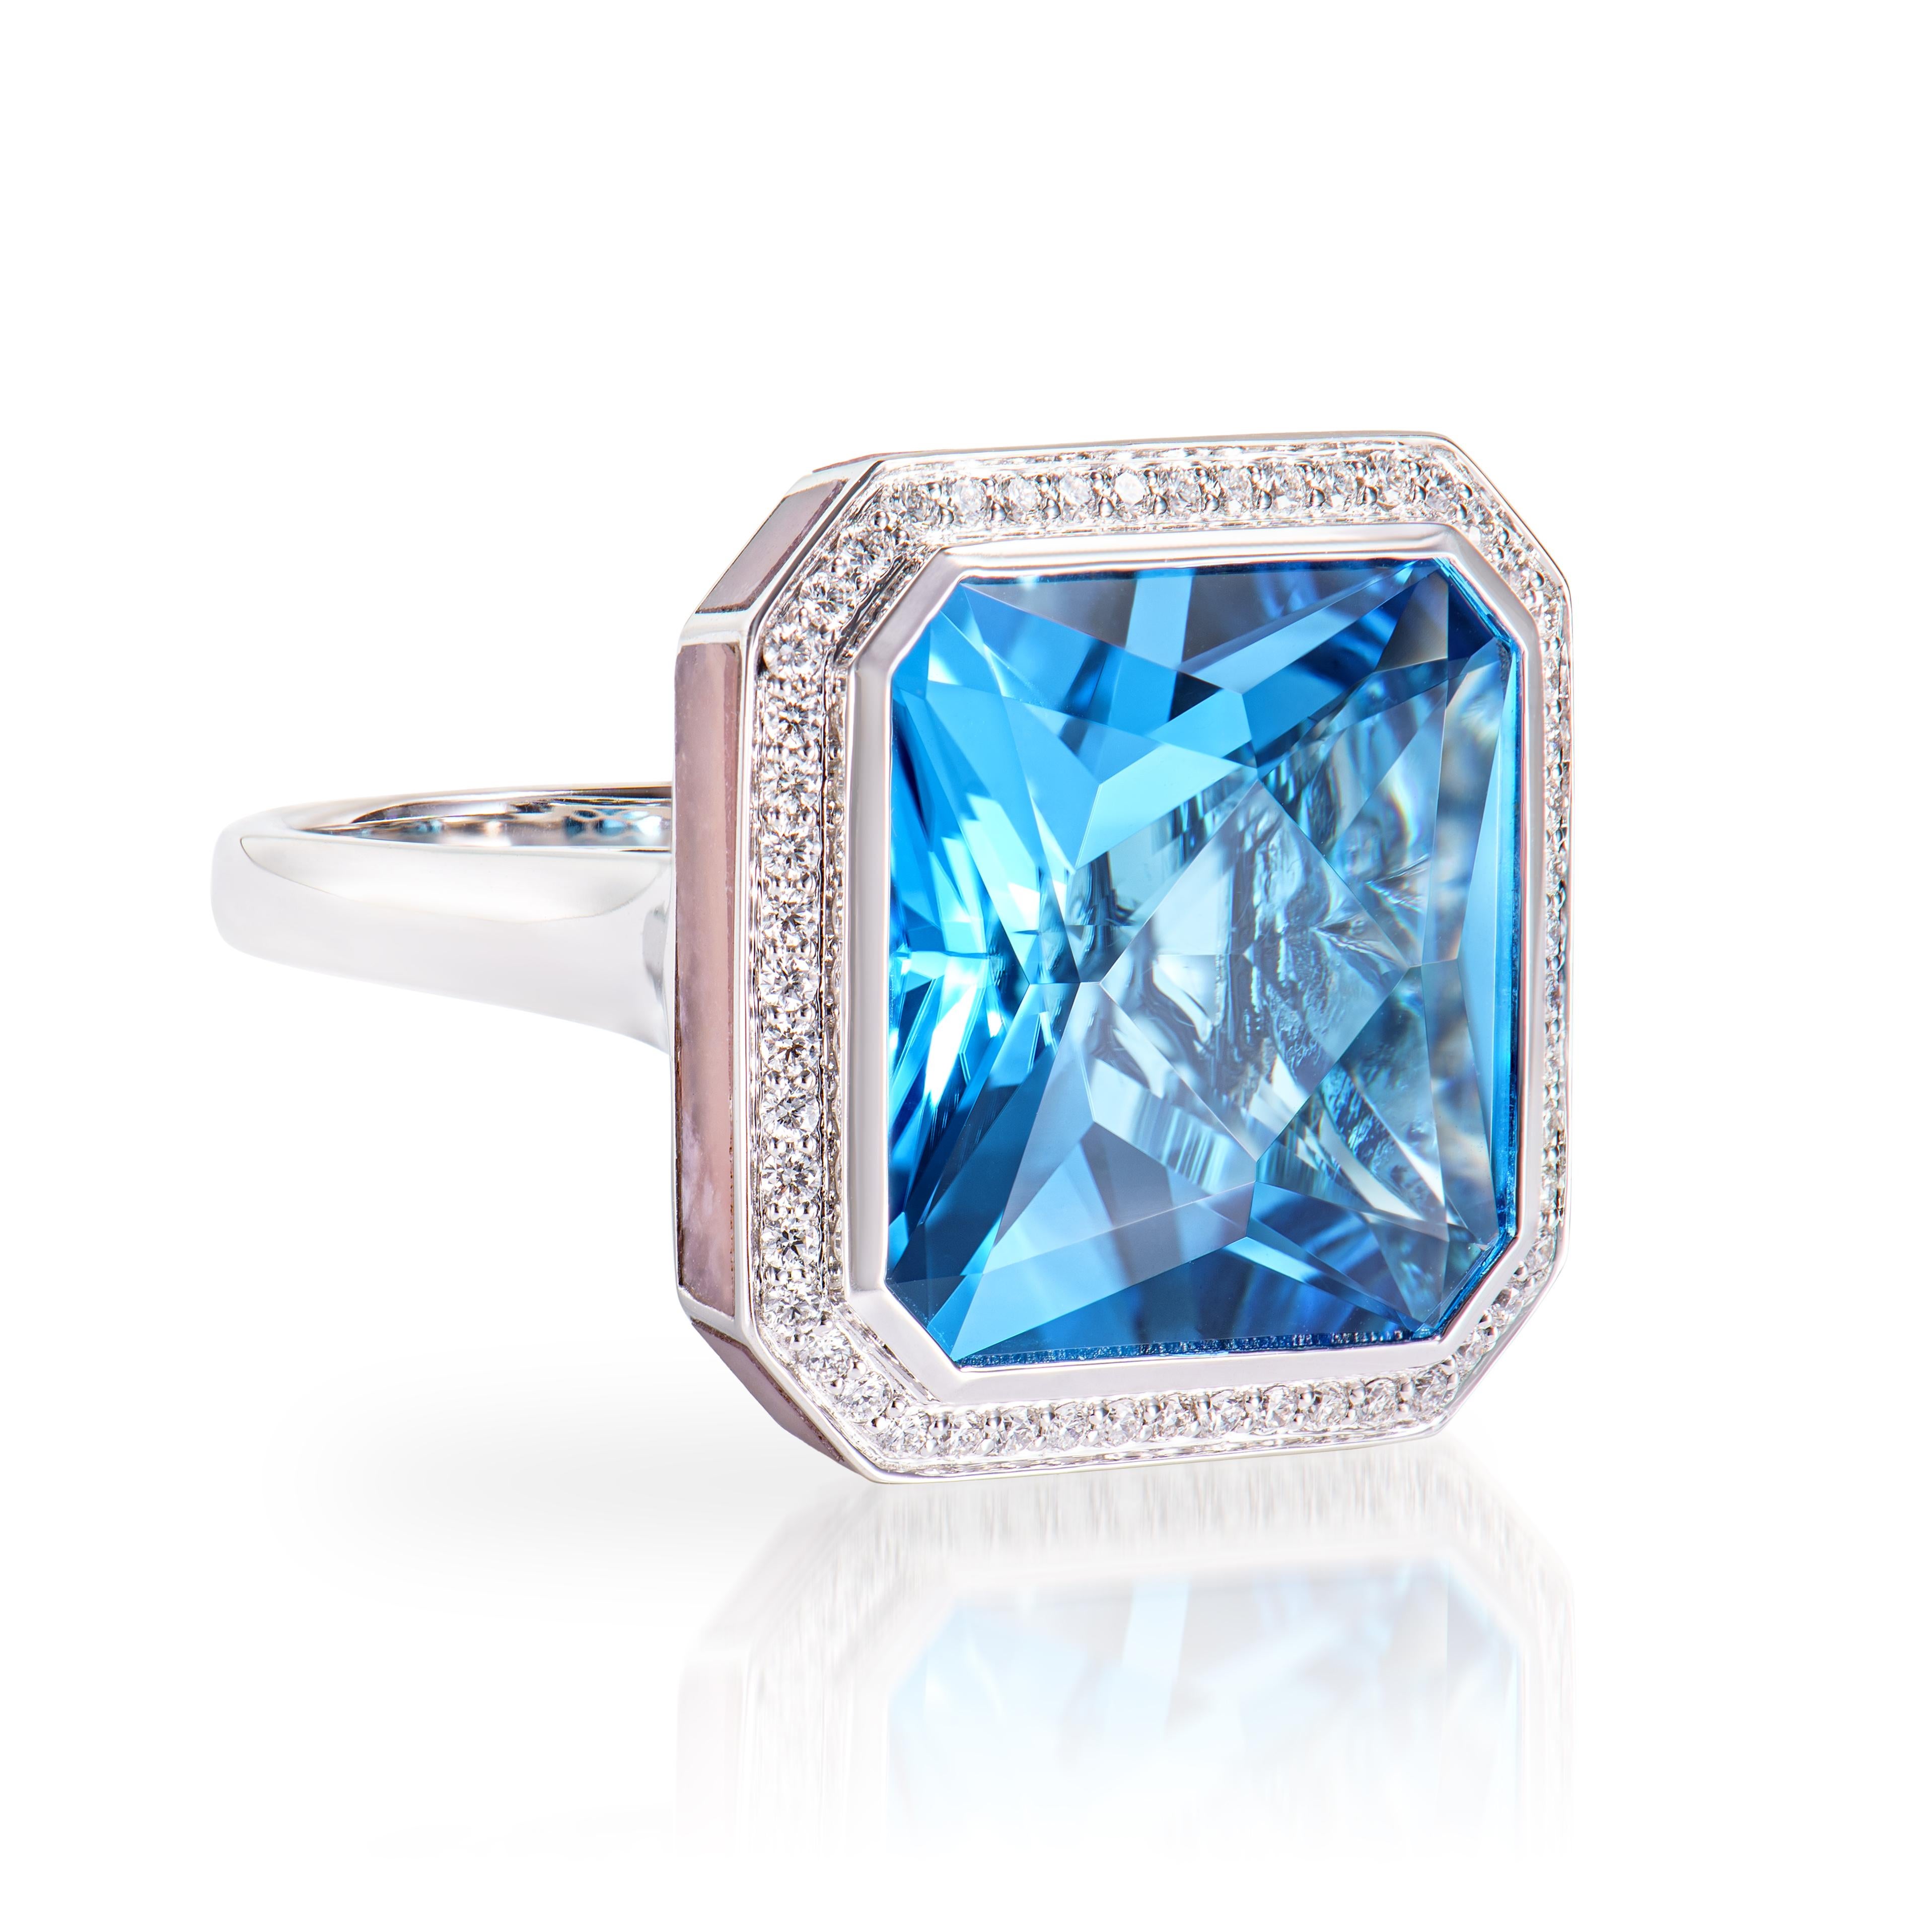 Dieser schöne Ring aus Schweizer Blautopas ist in einem Achteck gefasst. Der rosafarbene Opal, der den Rand des Rings umschließt, trägt zu seiner Schönheit und Eleganz bei. Dieser trendige Ring eignet sich für jede Veranstaltung oder Zusammenkunft.